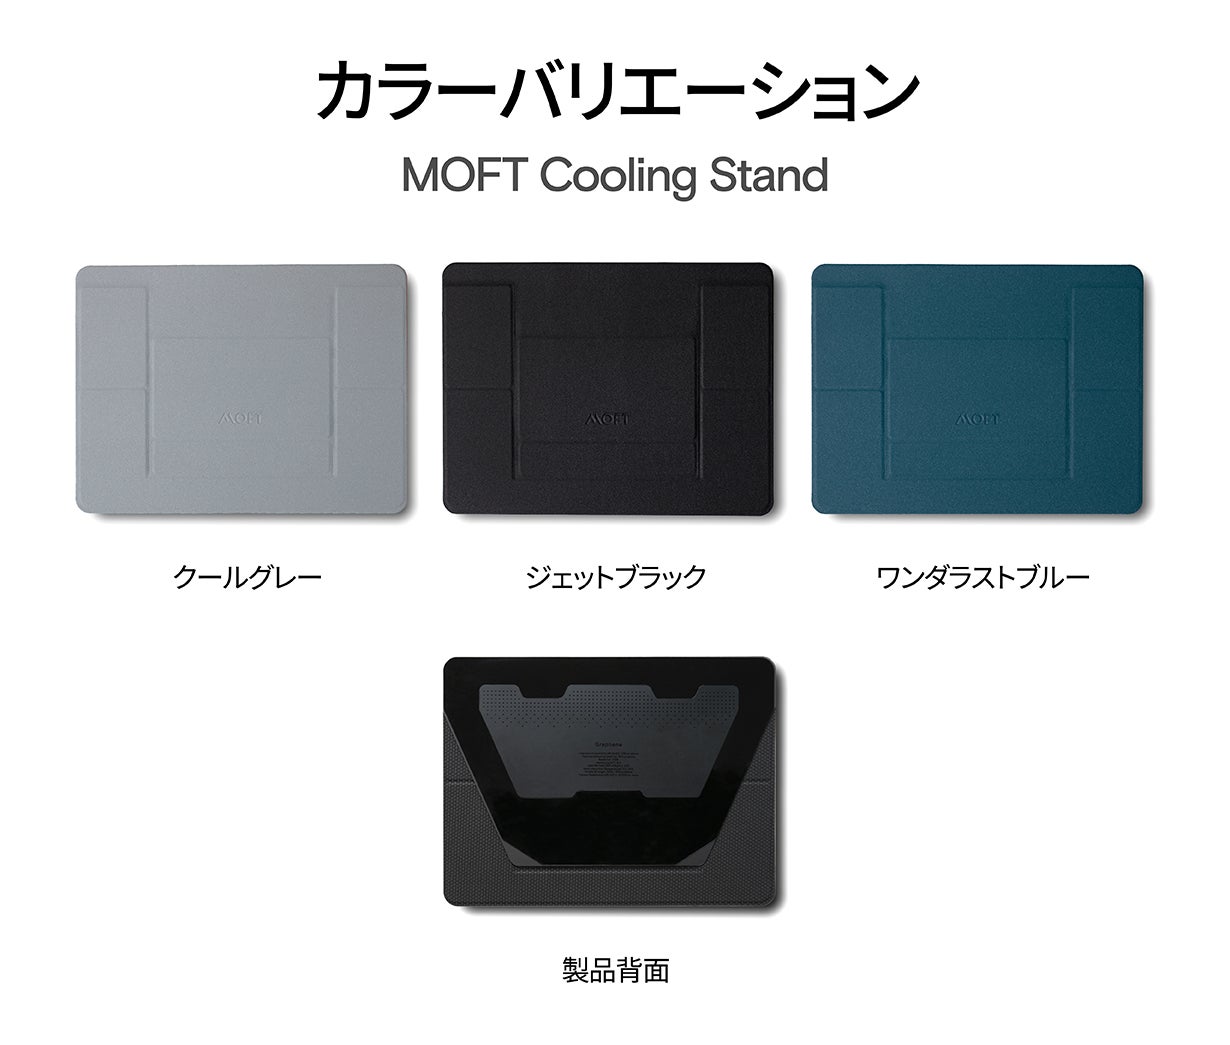 【MOFTブランド3周年記念】1秒でワーク環境が整う「MOFT Cooling Stand」 が、Makuakeにて目標金額の1000%突破！のサブ画像6